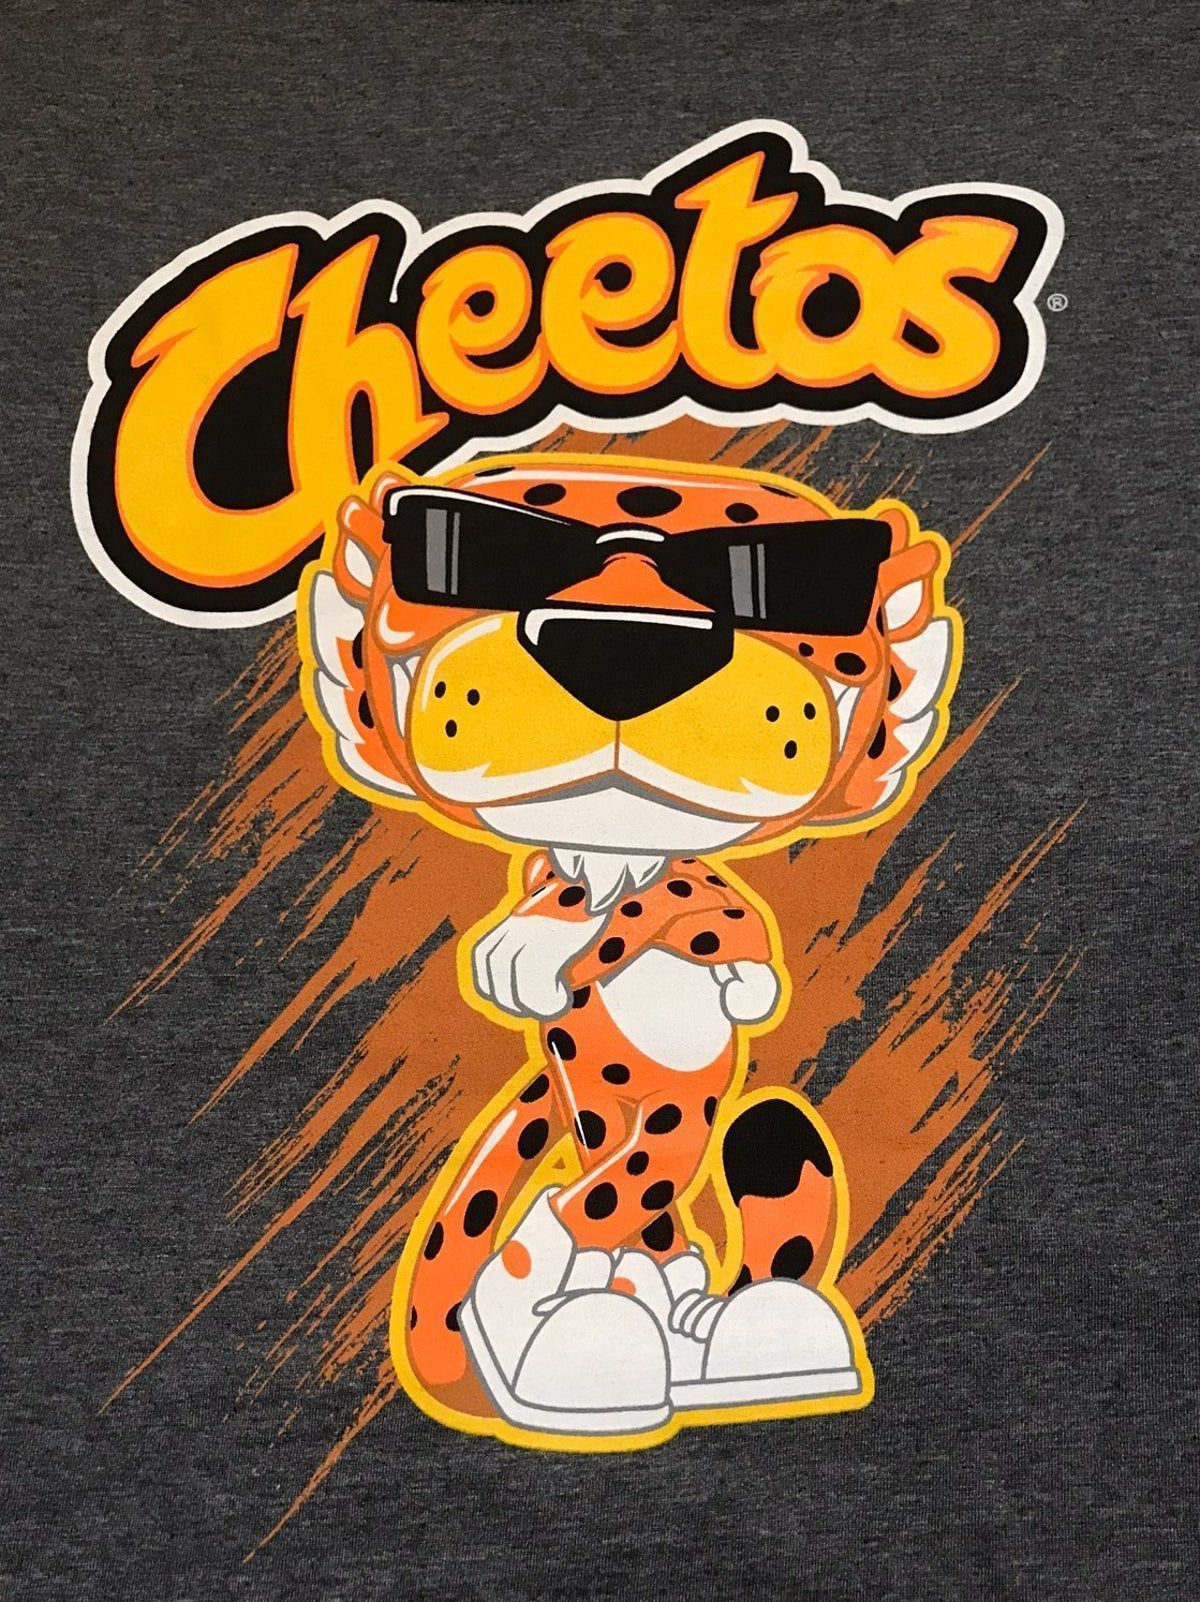 Chester Cheetah Wallpaper